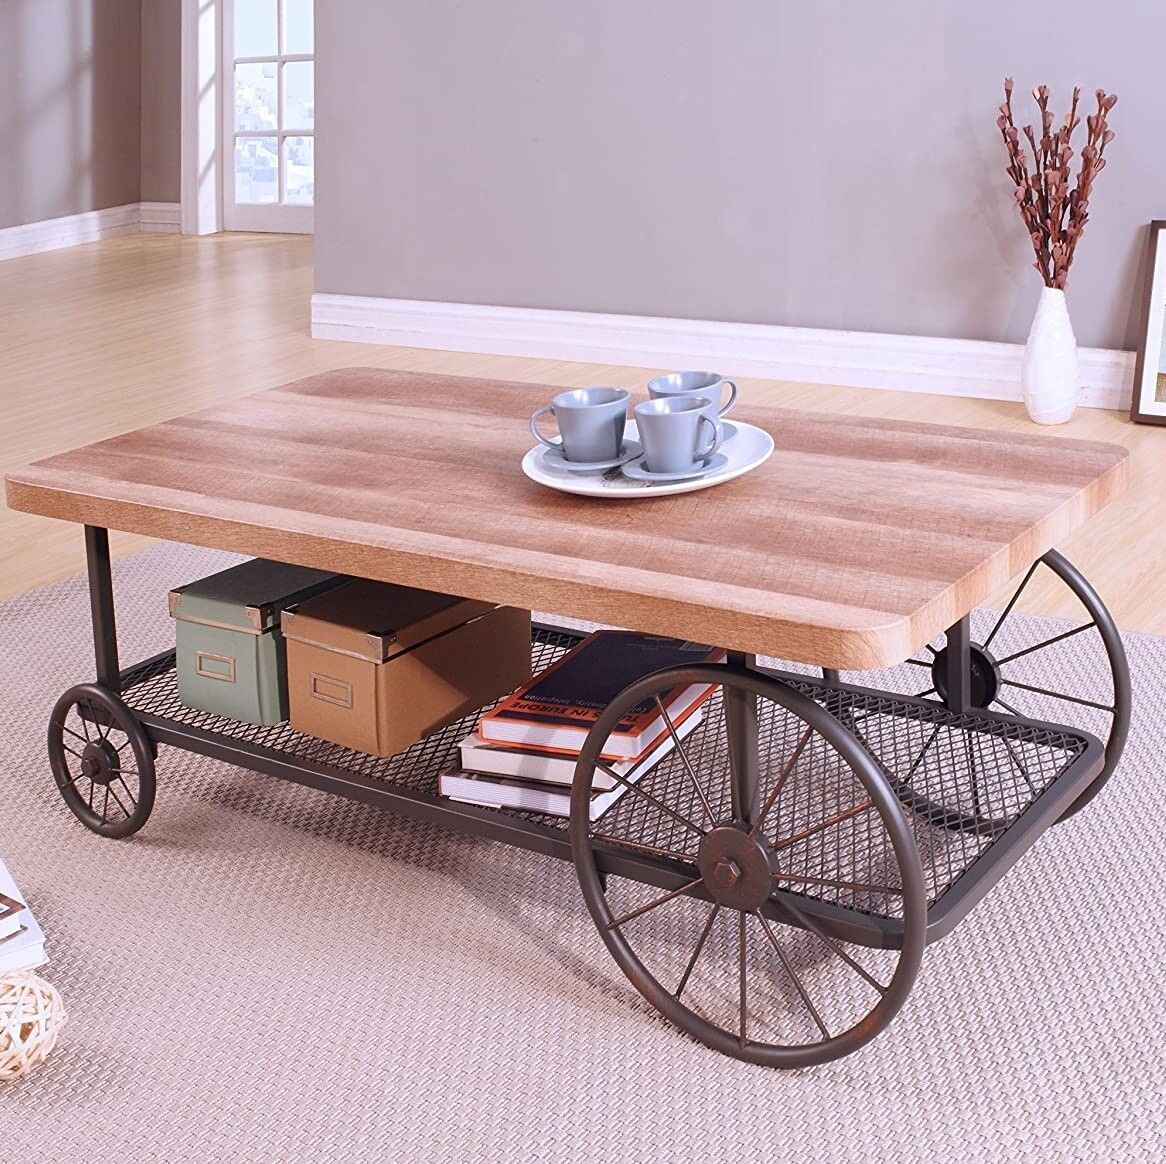 verkoper Weggooien Krijger Coffee Table with Wheels Metal Industrial Wooden Top Retro Living Room  Furniture 313110970935 | eBay